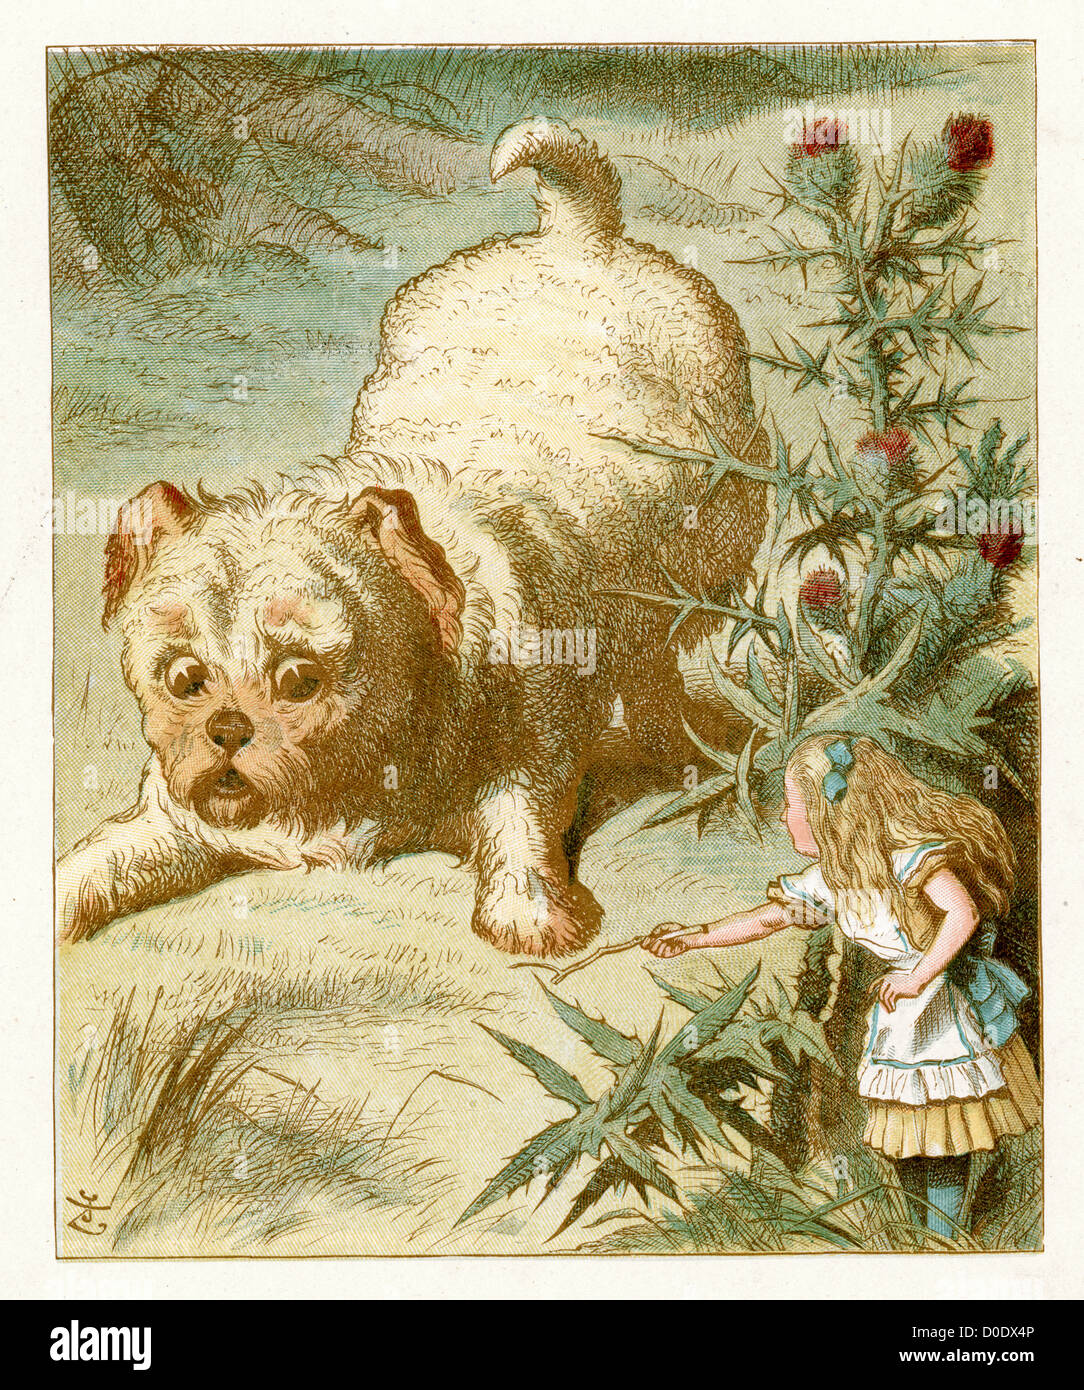 Die lieben kleinen Welpen von Lewis Carroll Geschichte Alice im Wunderland, Illustration von Sir John Tenniel 1871 Stockfoto